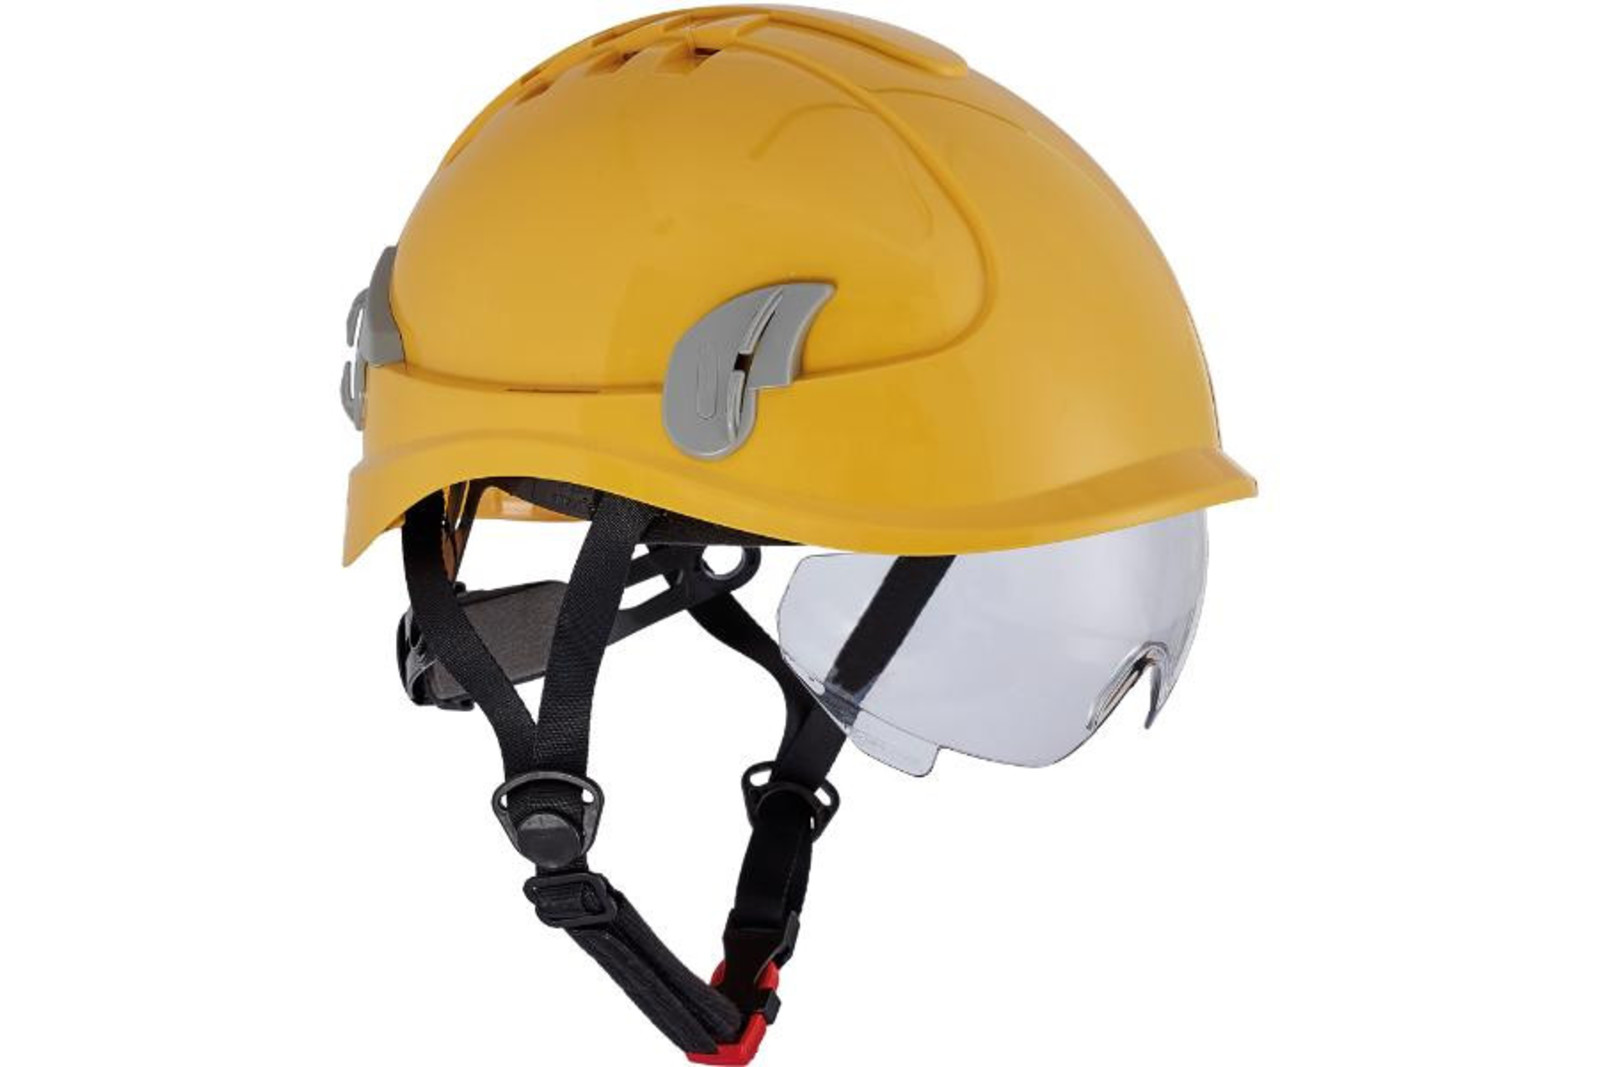 Ochranná prilba Alpinworker pre prácu vo výškach - farba: žltá